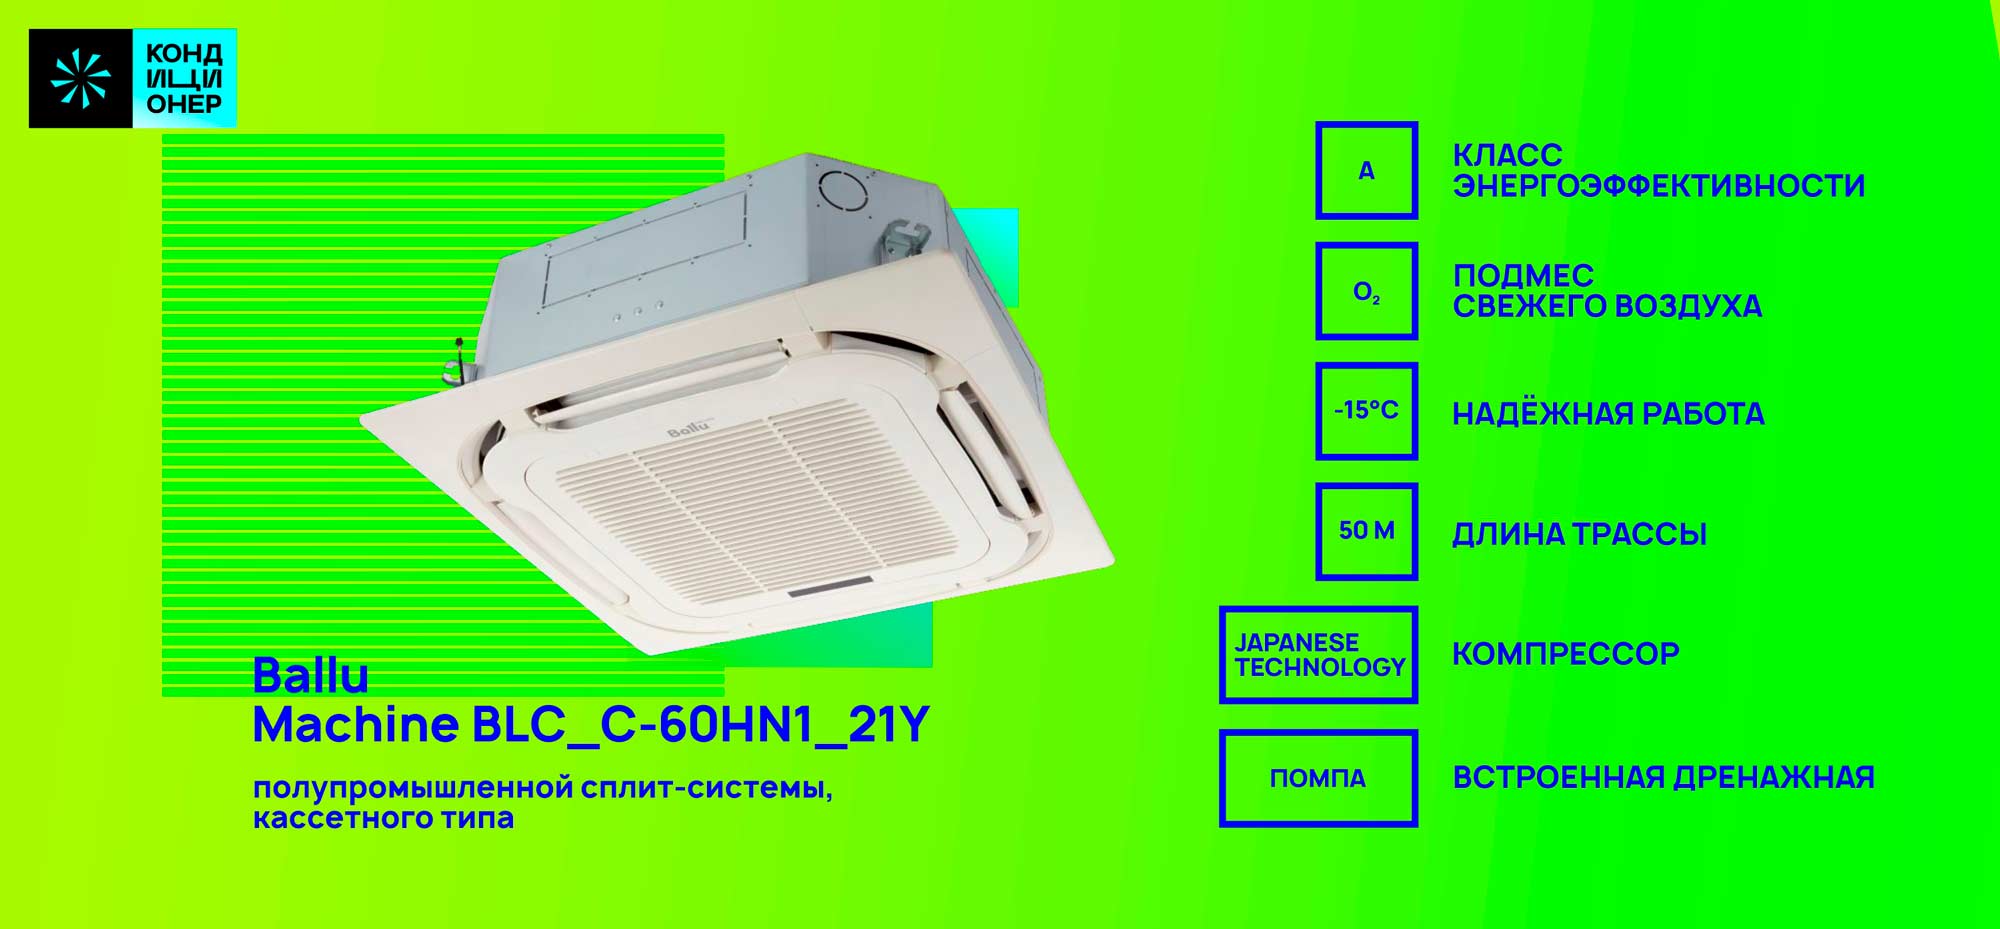 BALLU Machine BLC_C-60HN1_37